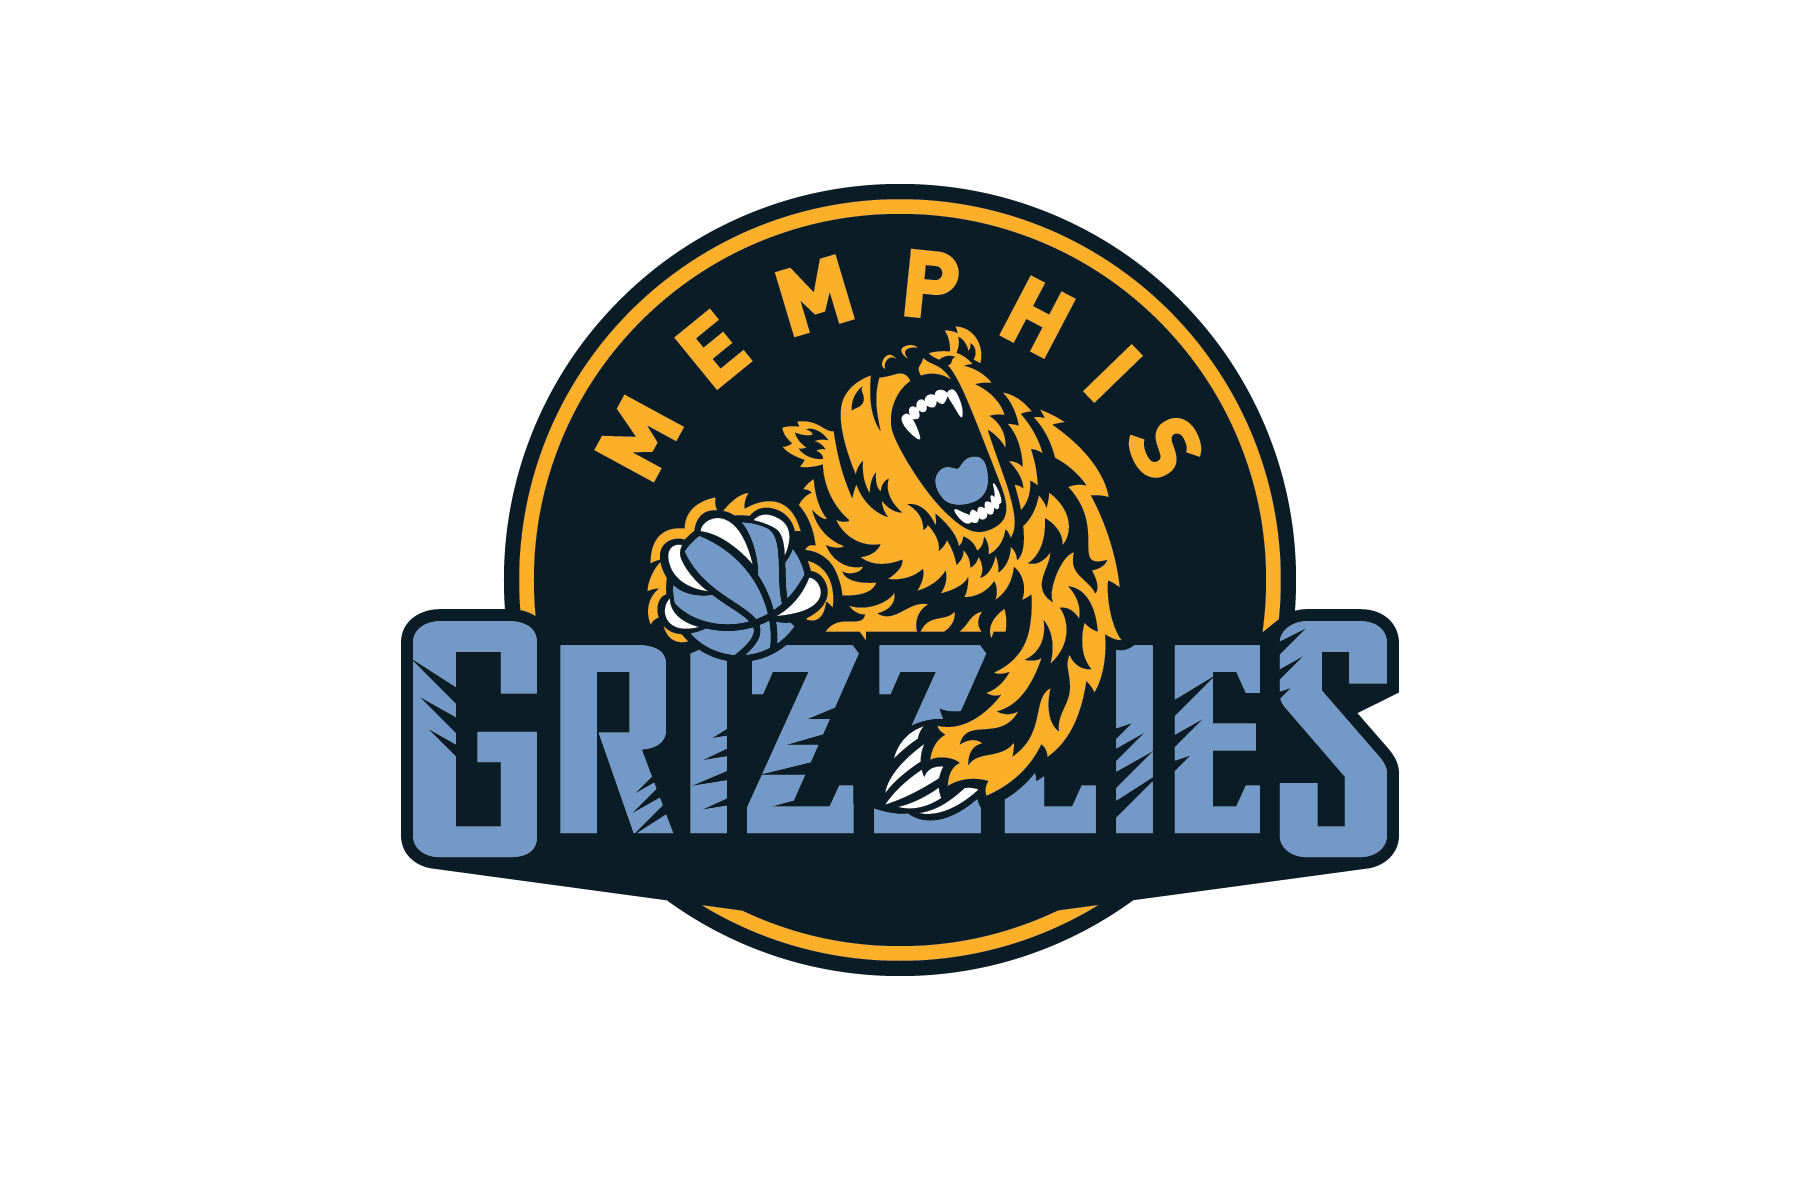 Memphis Grizzlies Logo - Michael Weinstein NBA Logo Redesigns: Memphis Grizzlies